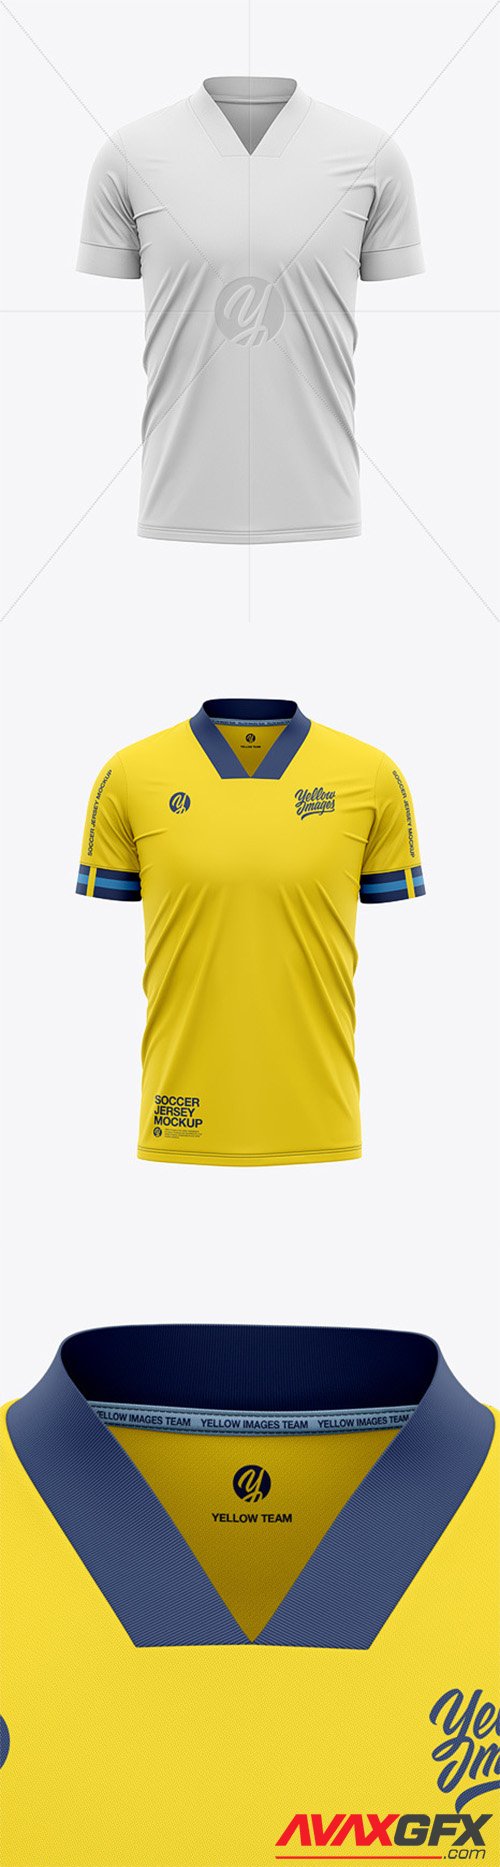 Men’s Soccer Jersey T-Shirt Mockup - Front View - Football Jersey Soccer T-shirt 56320